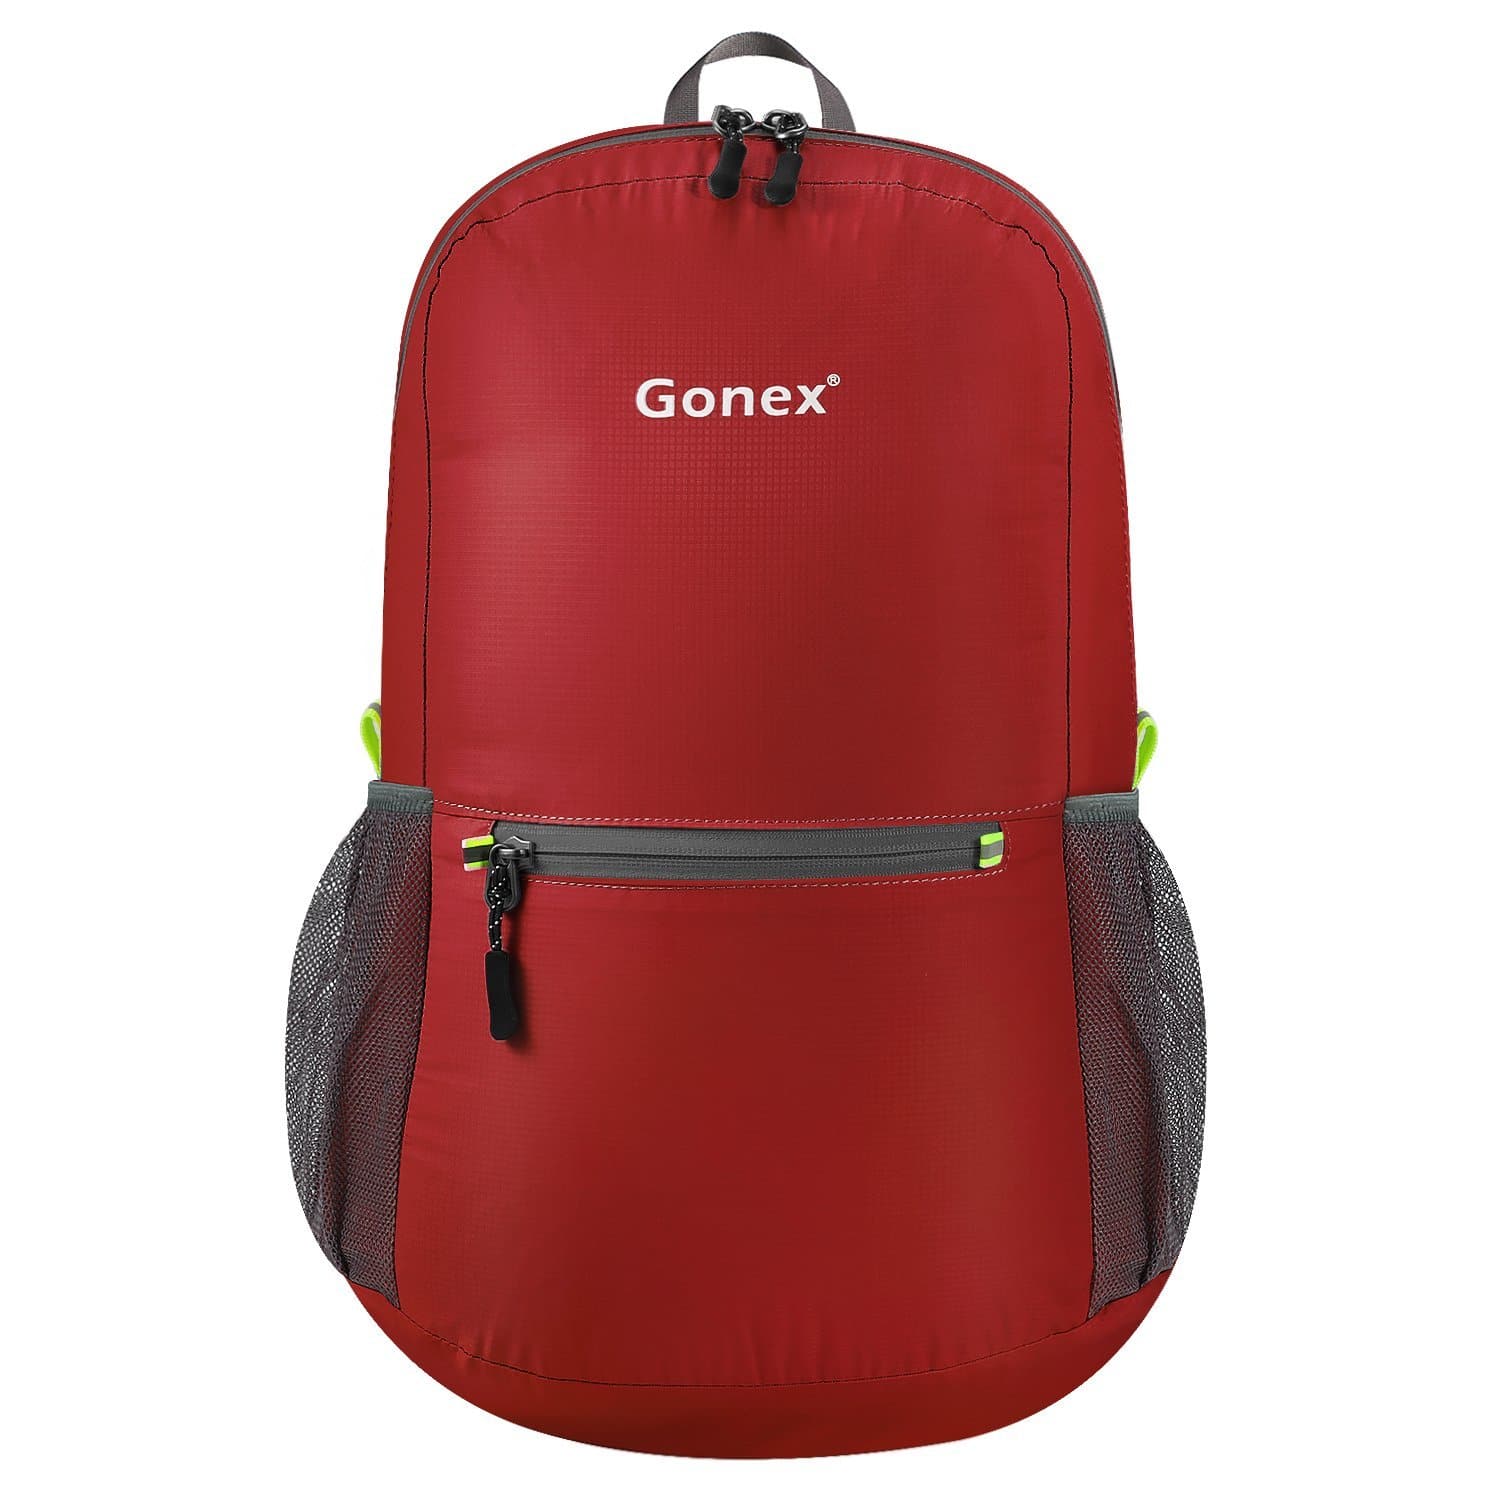 Gonex Ultralight Handy Travel Backpack